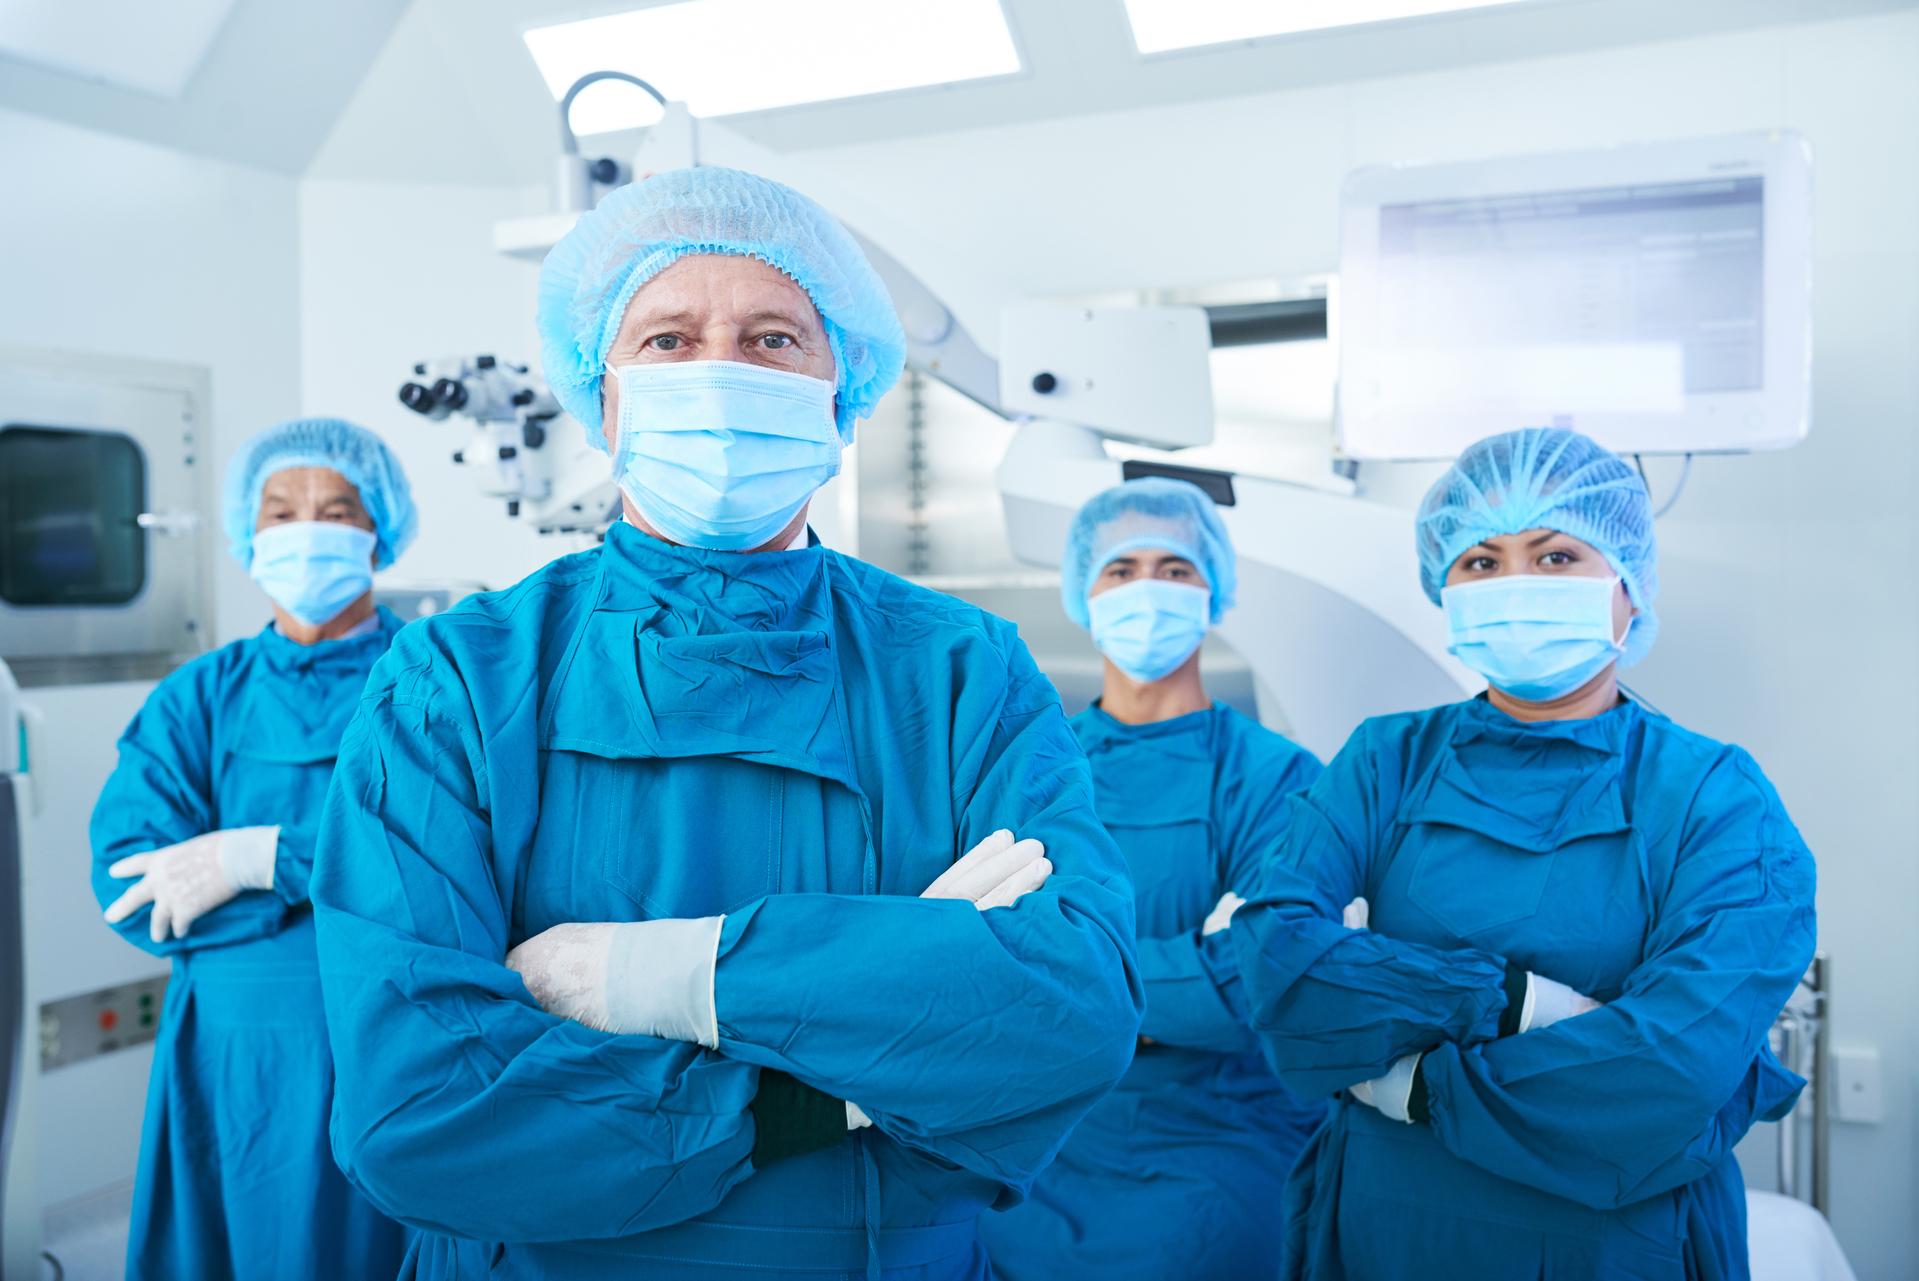 Confident team of surgeons